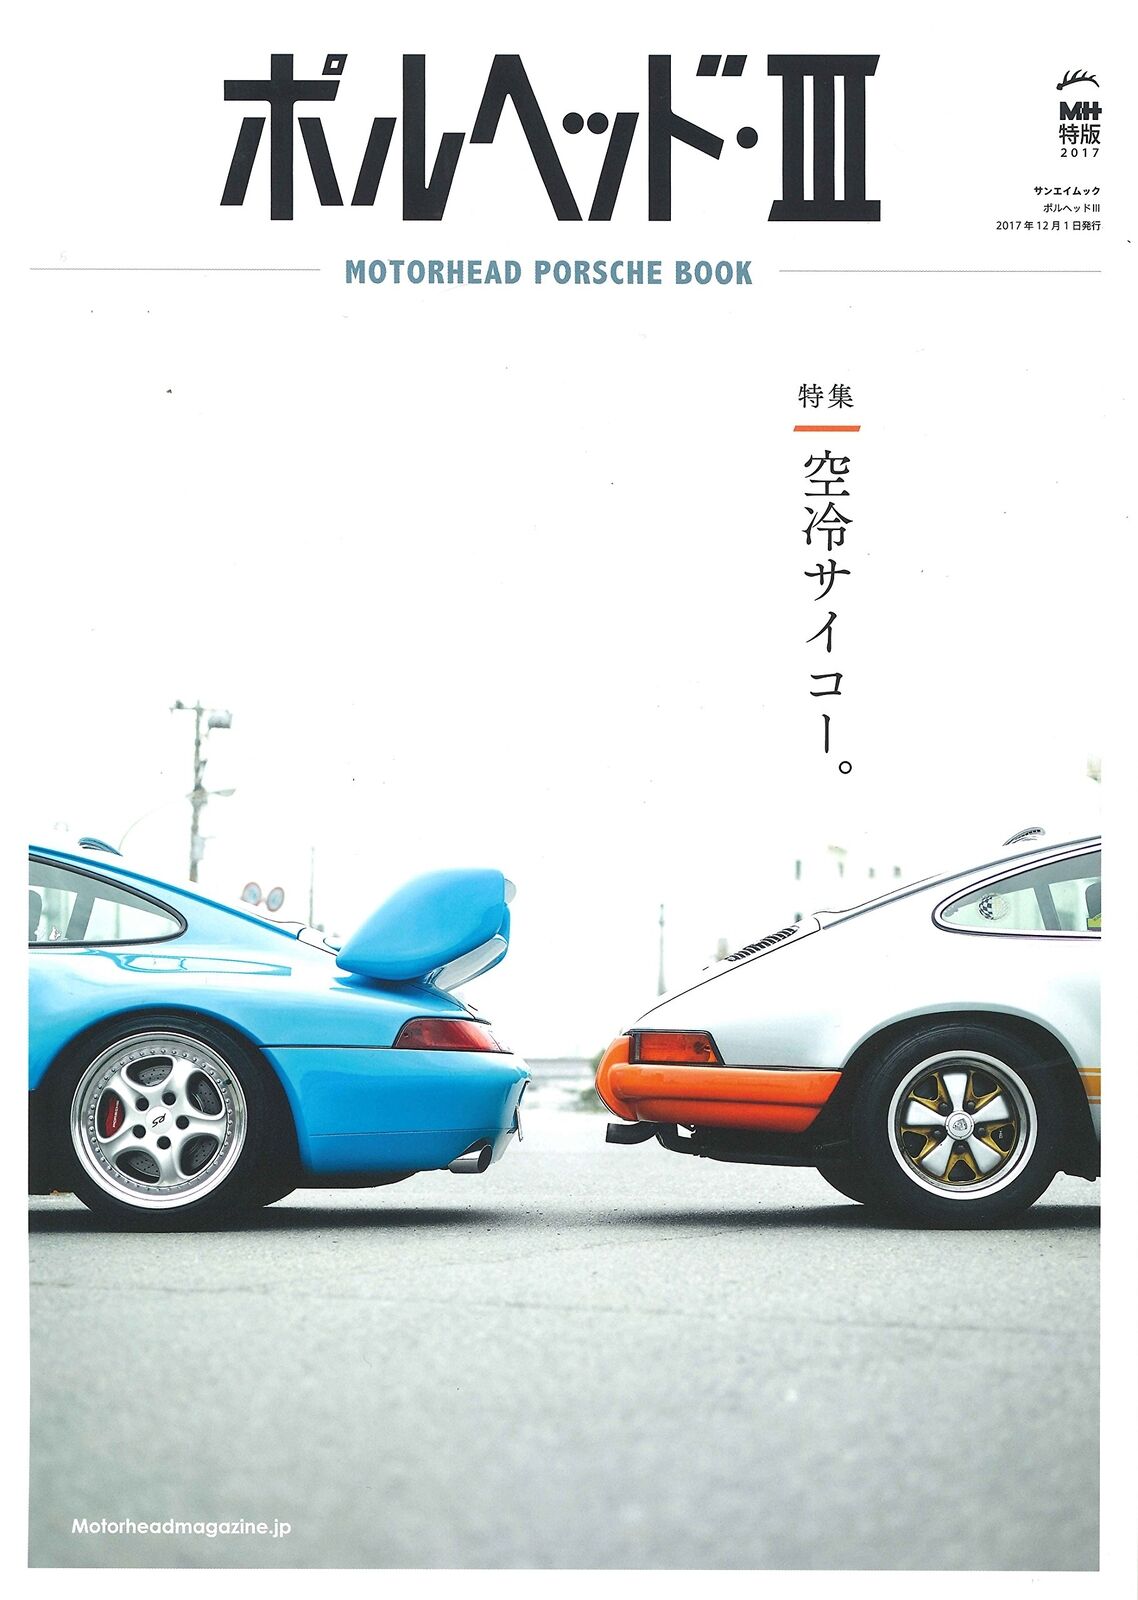 Motorhead Porsche lll Japanese book Super Car Japan 2017